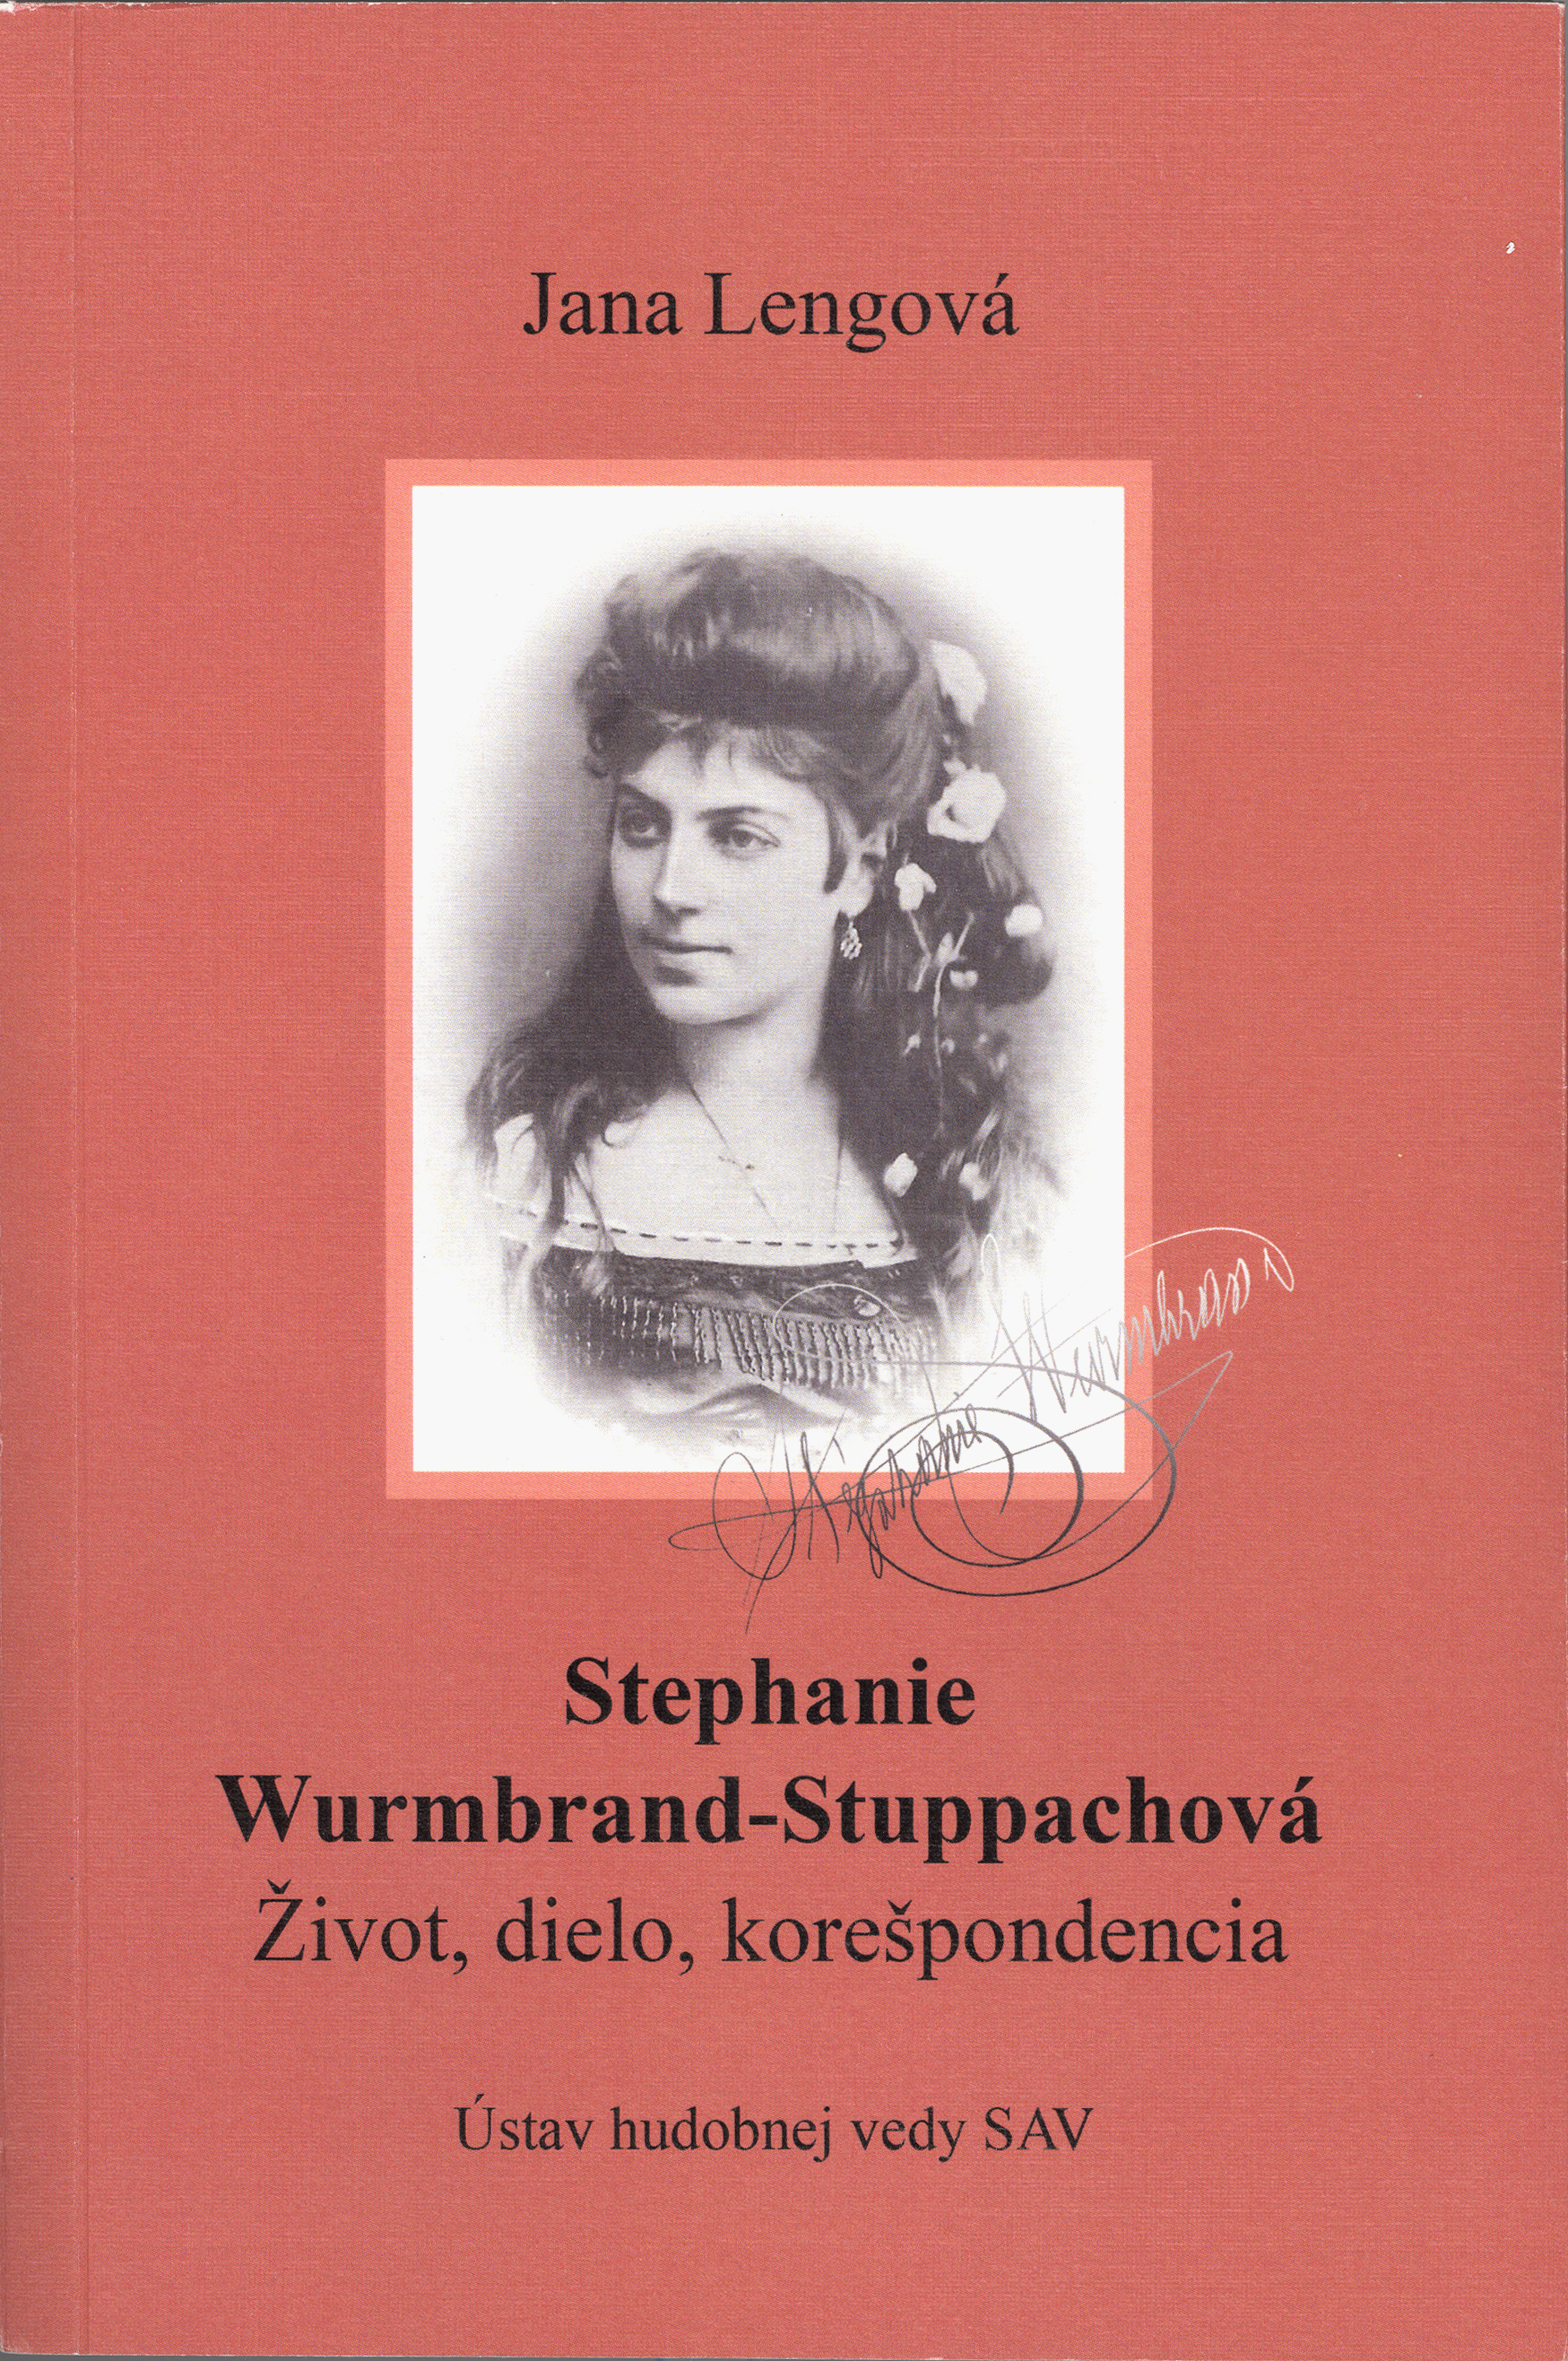 Stephanie Wurmbrand-Stuppachová